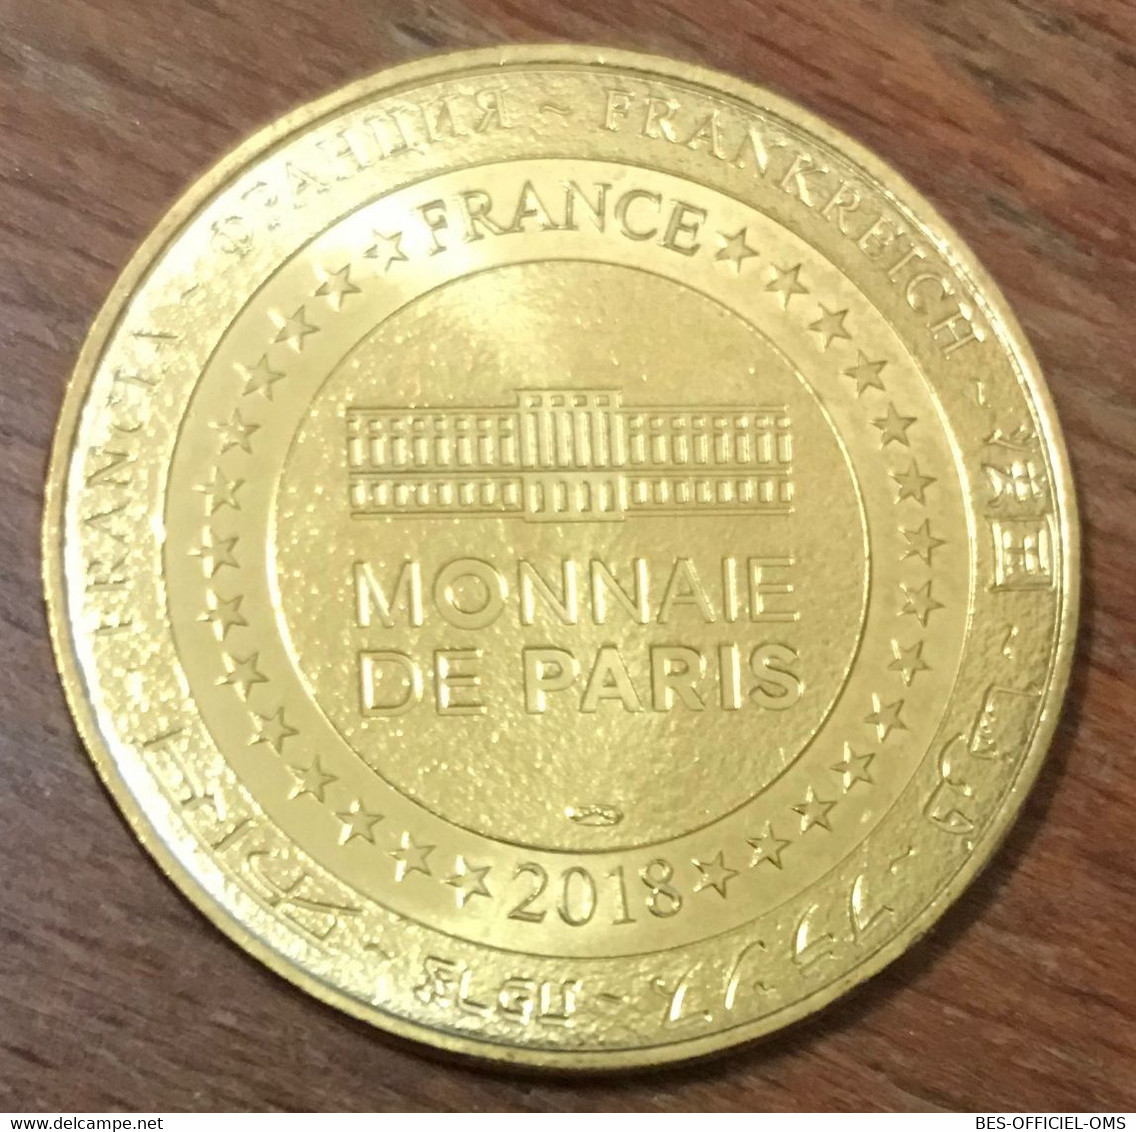 12 MILLAU LE VIADUC 10 ANS MÉDAILLE SOUVENIR MONNAIE DE PARIS 2018 JETON TOURISTIQUE MEDALS TOKENS COINS - 2018